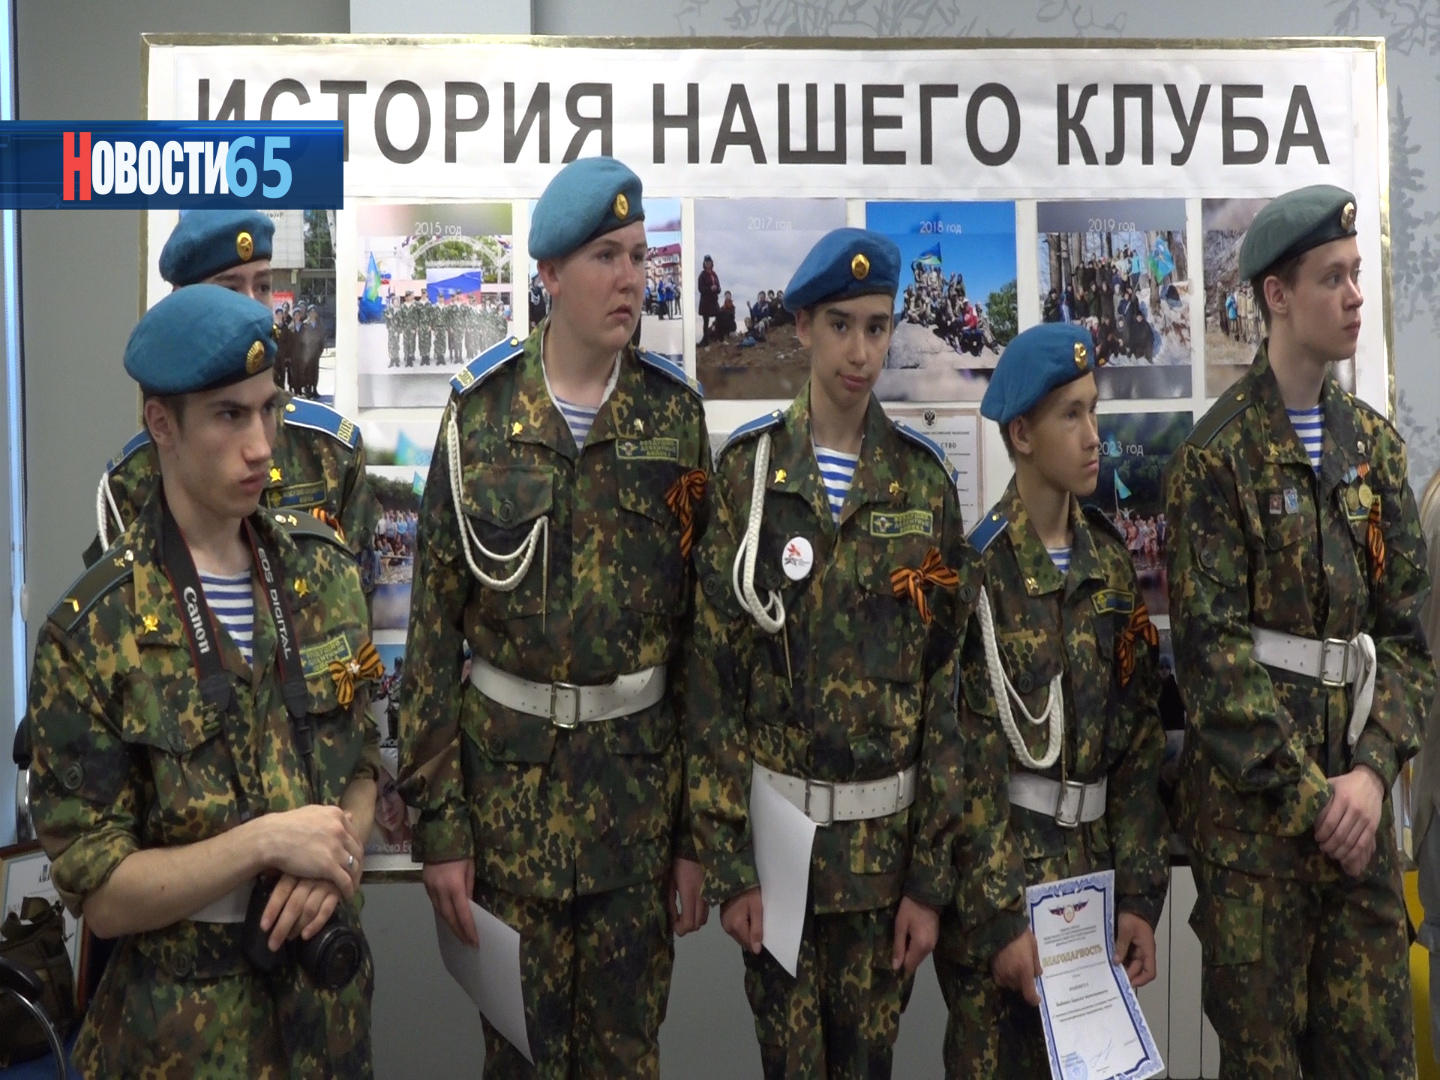 Юбилей клуба «Десантник». Военно-спортивная организация отметила 10-летие со дня образования